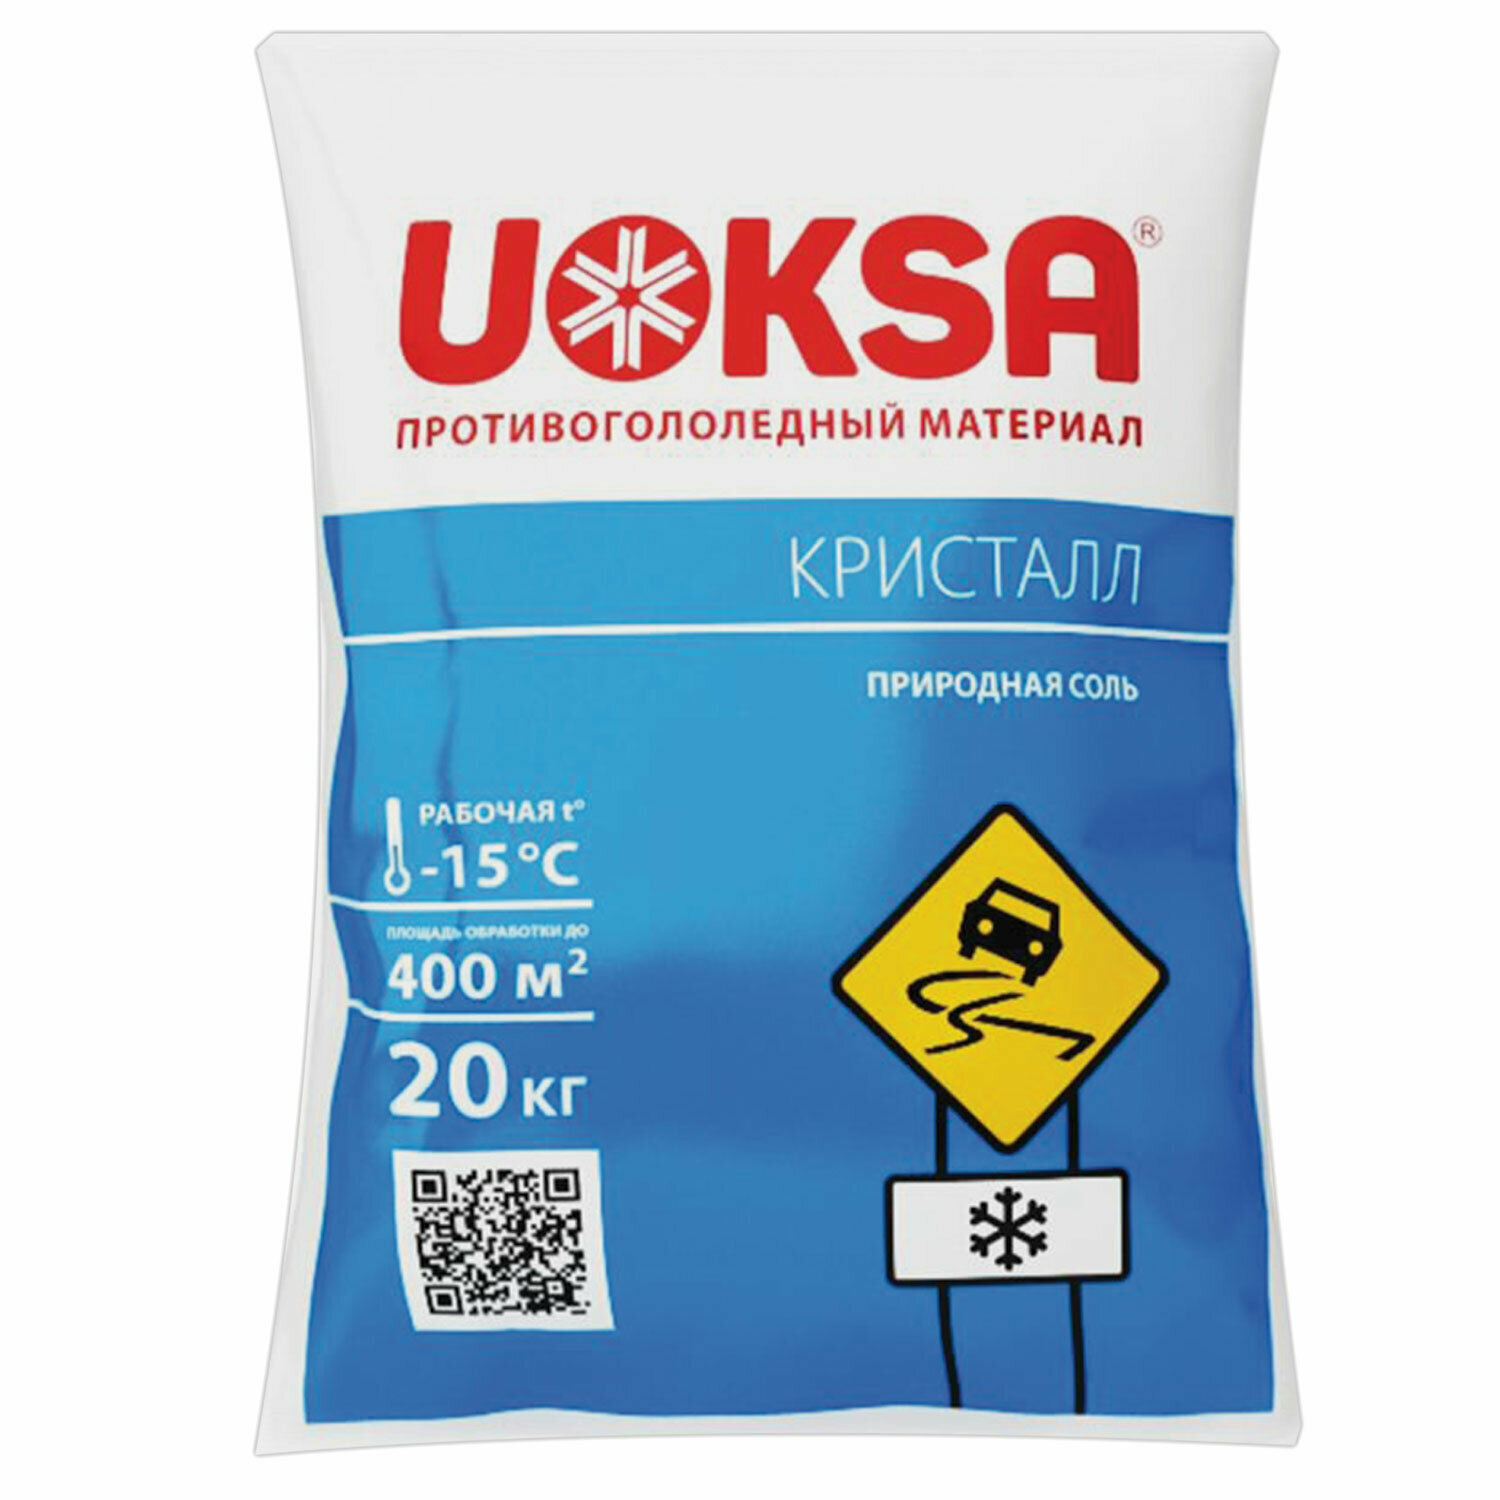 Реагент противогололёдный 20 кг UOKSA КрИстал, до -15°C, природная соль, мешок. 607415